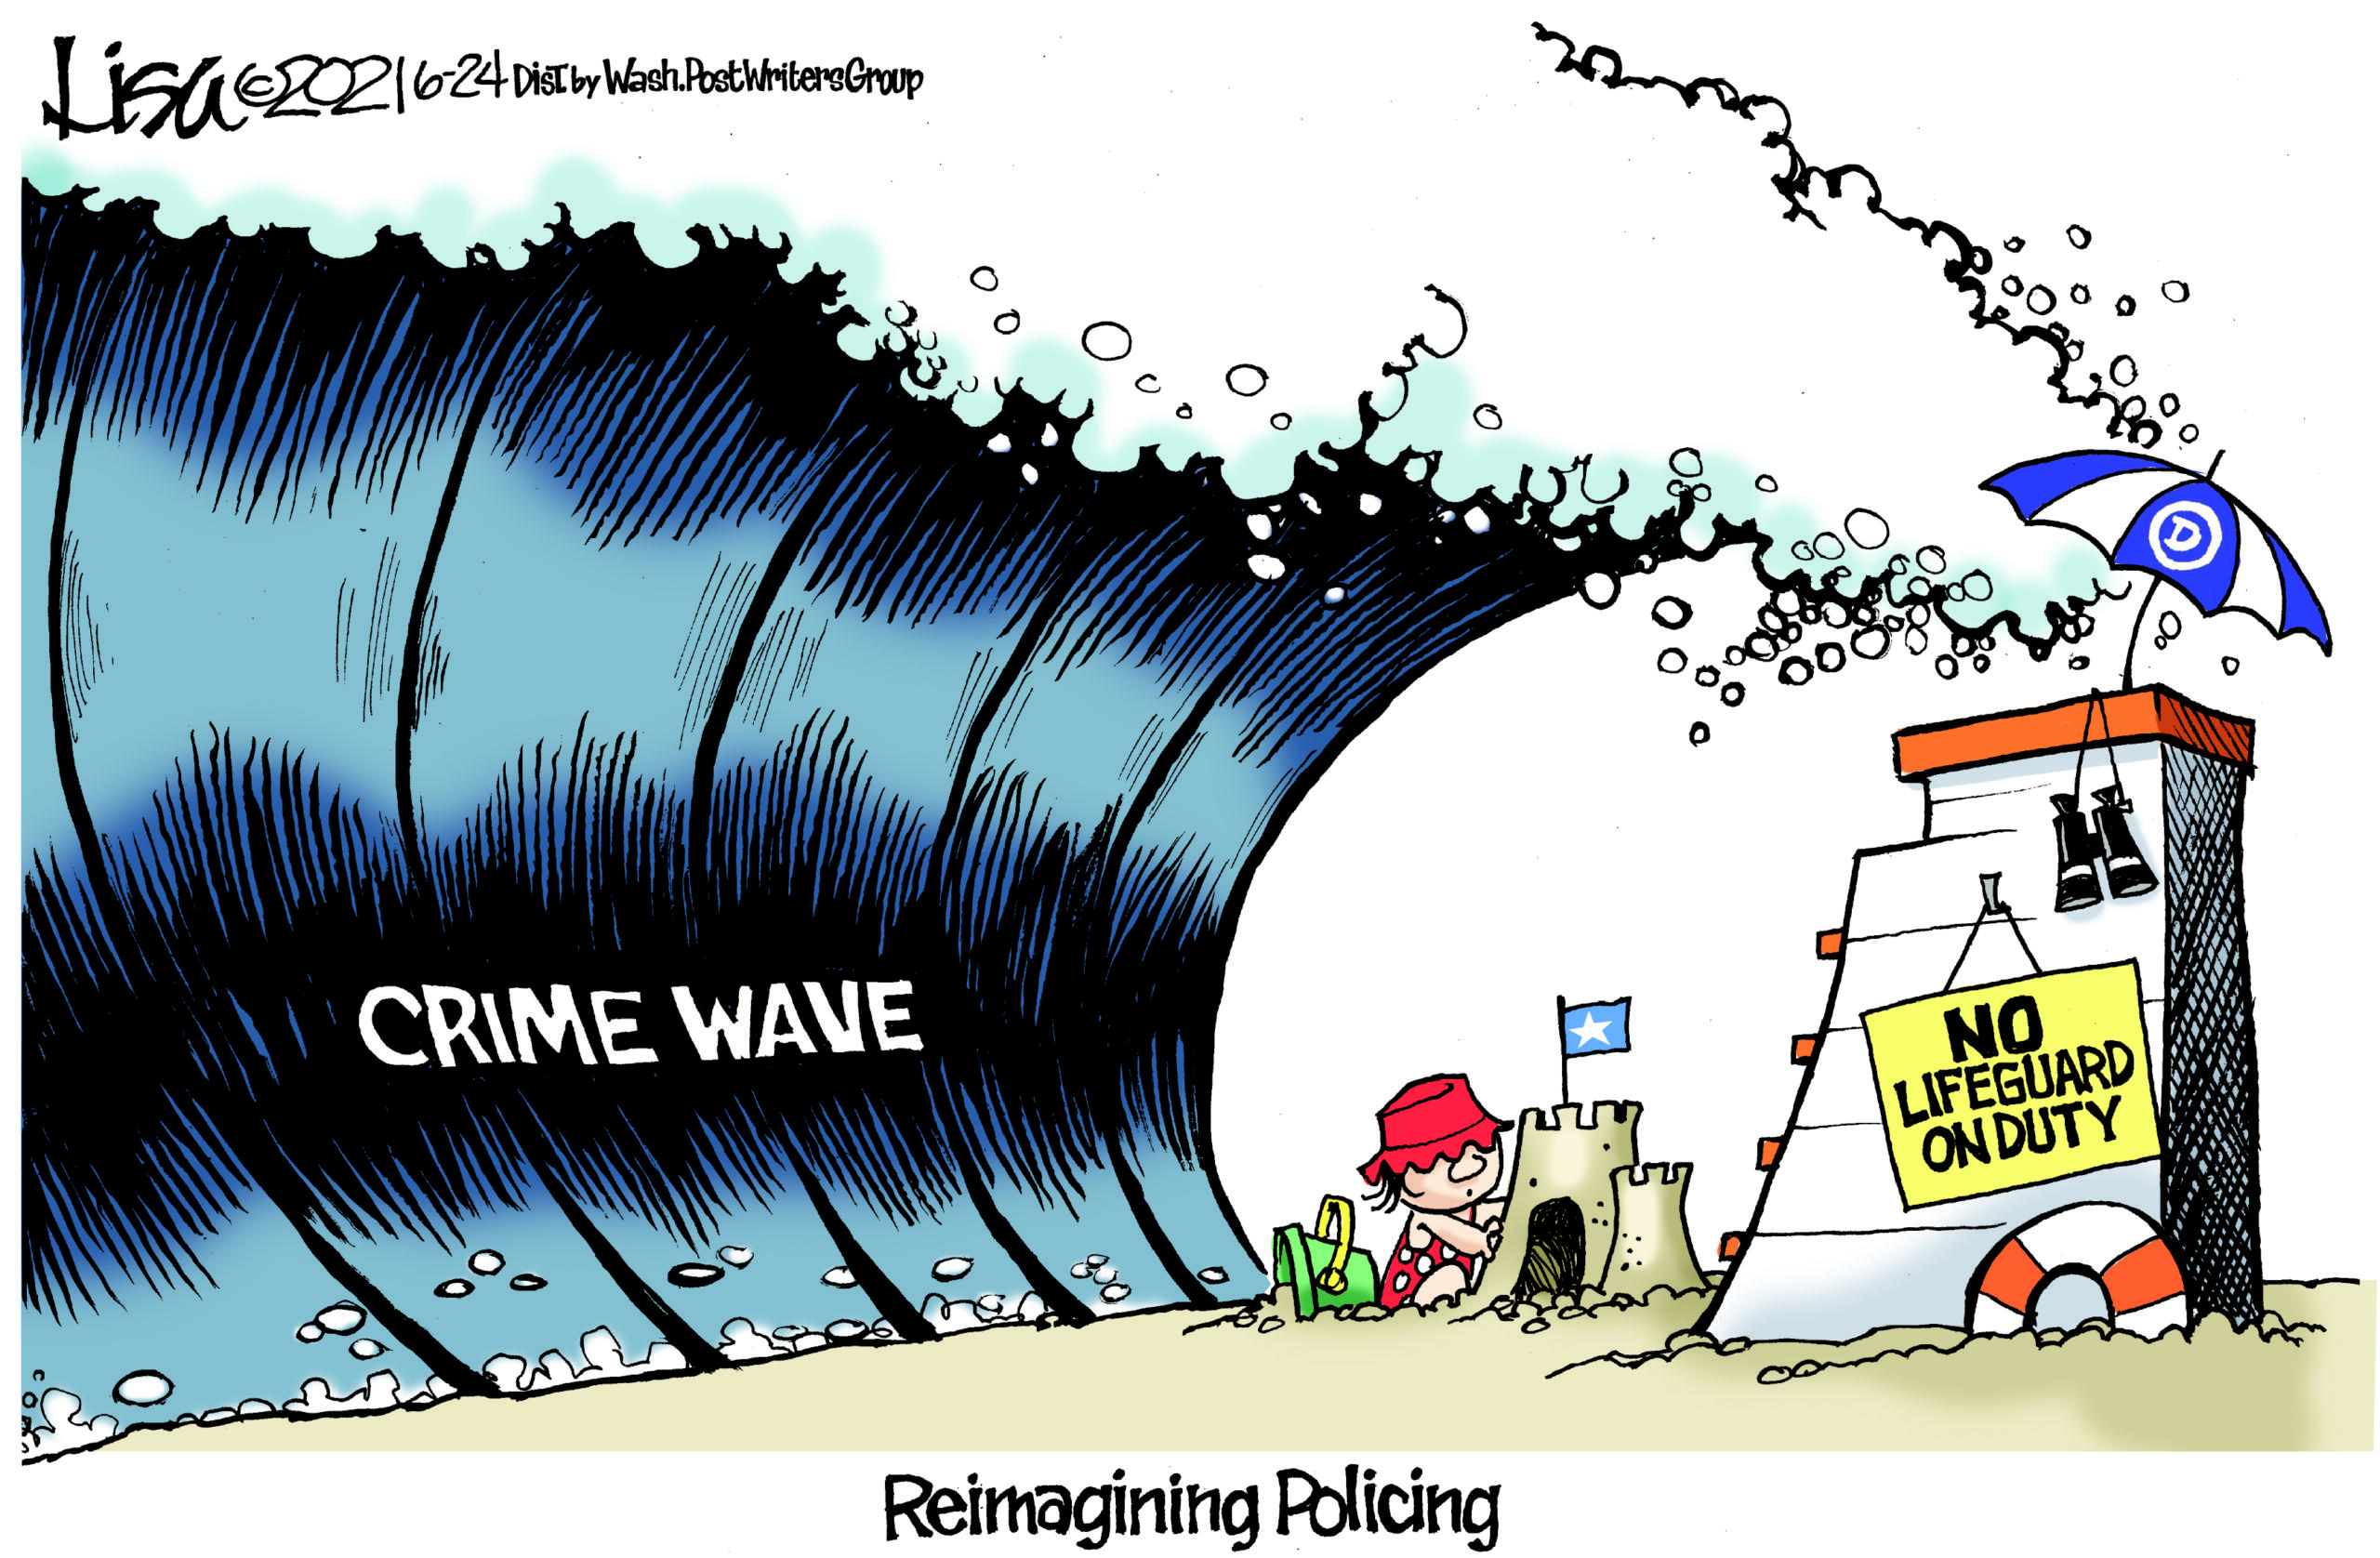 June 26: Crime Wave